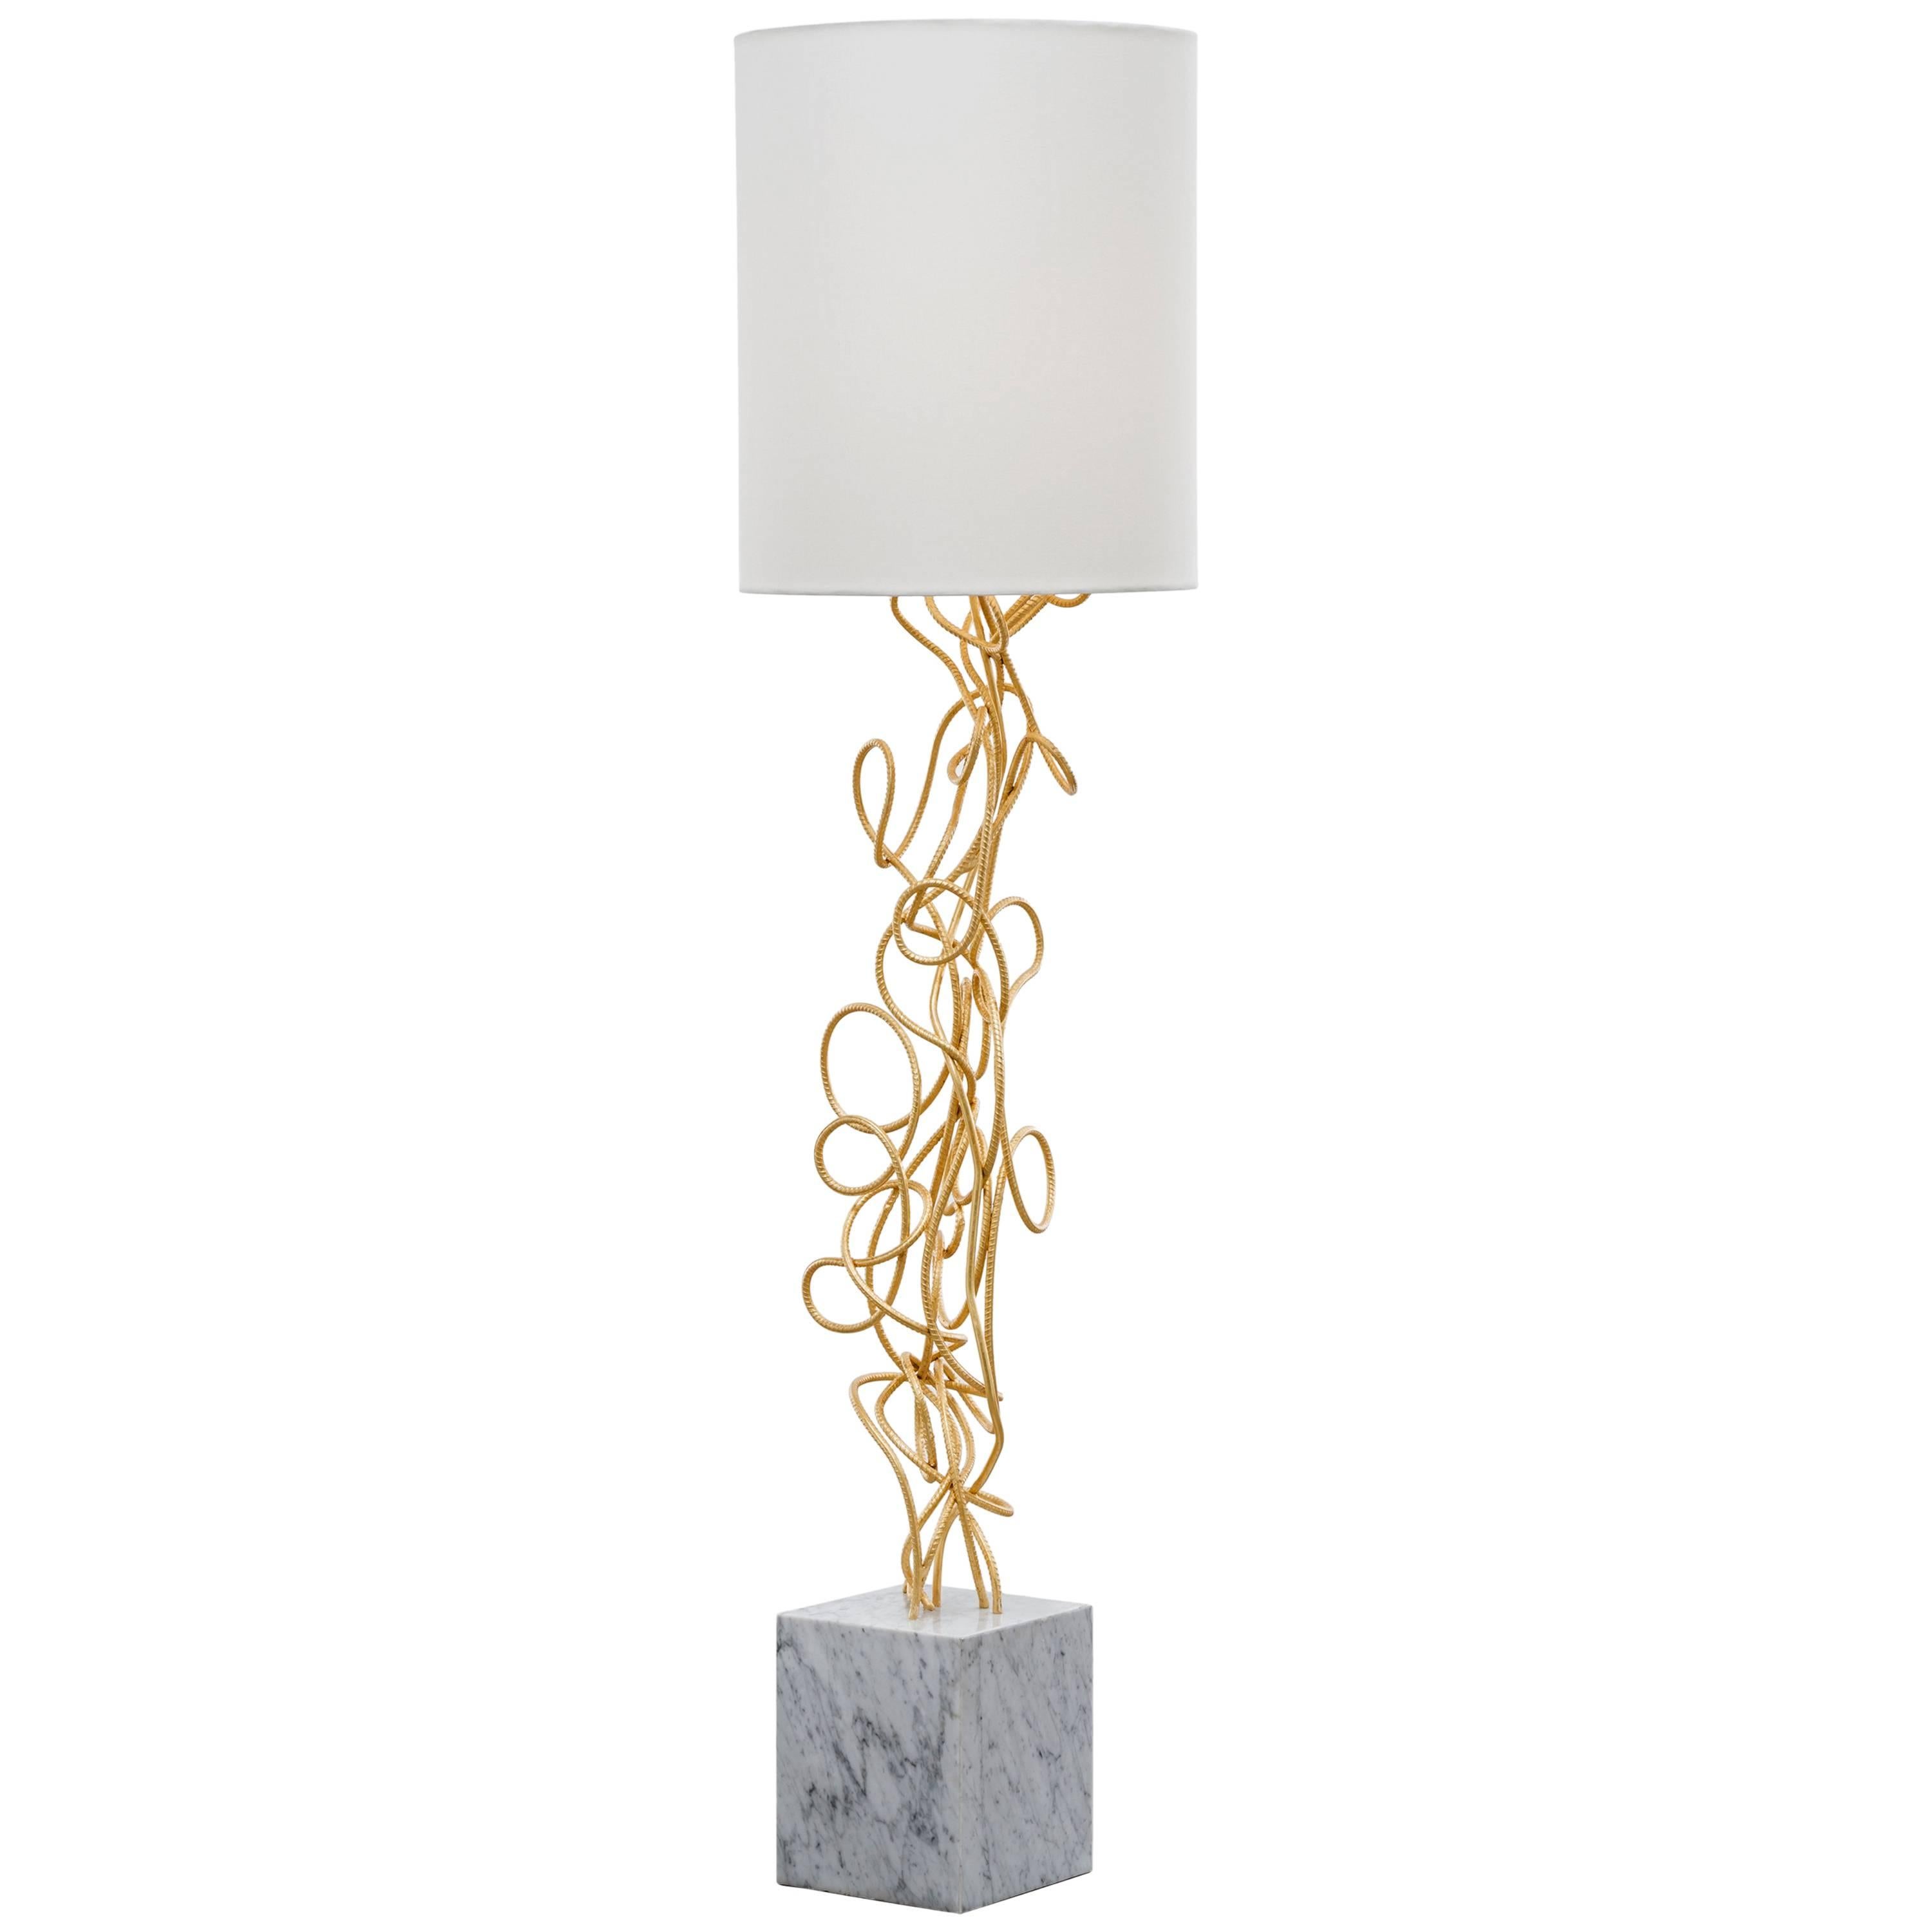 DAX FLOOR LAMP – handgedrehte moderne Stehlampe aus Blattgold mit Carrara-Marmorsockel